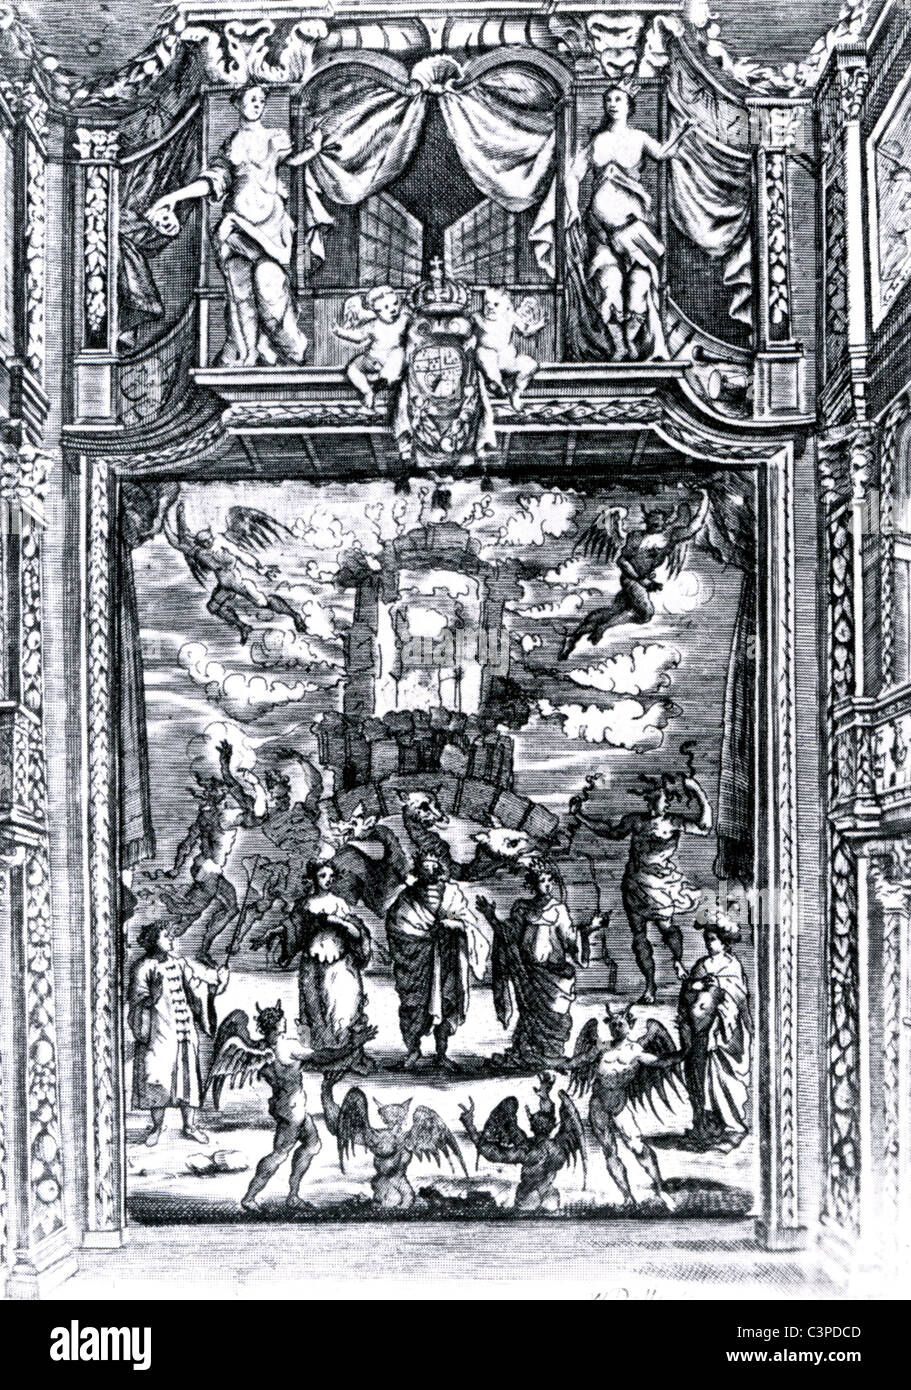 Restaurierung-Theater-Szene von der Kaiserin von Marokko durch Elkana Settle in der Duke of York Theatre, London, im Jahre 1673 Stockfoto